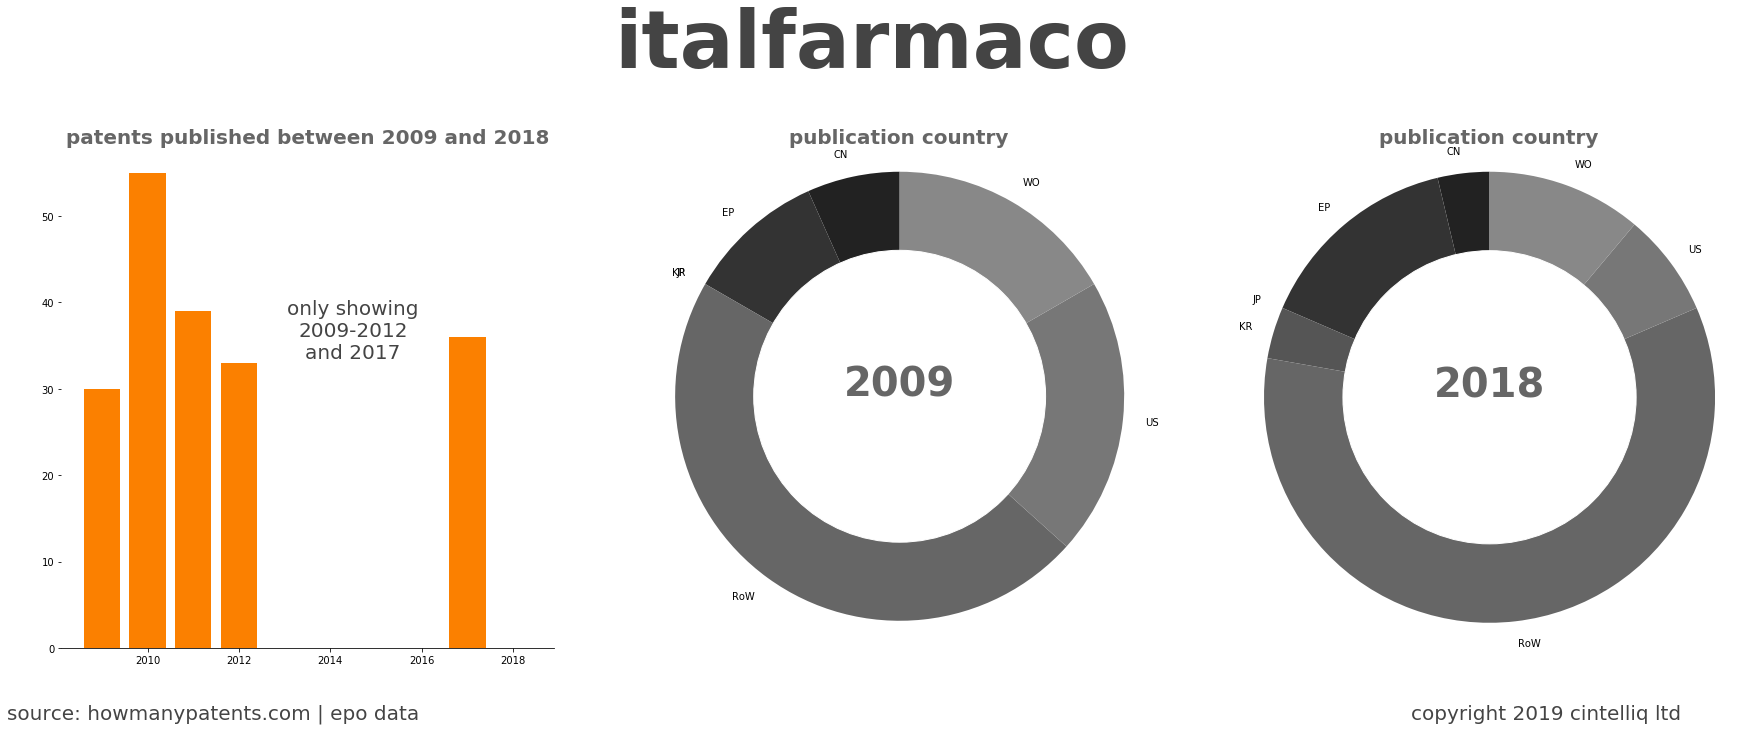 summary of patents for Italfarmaco